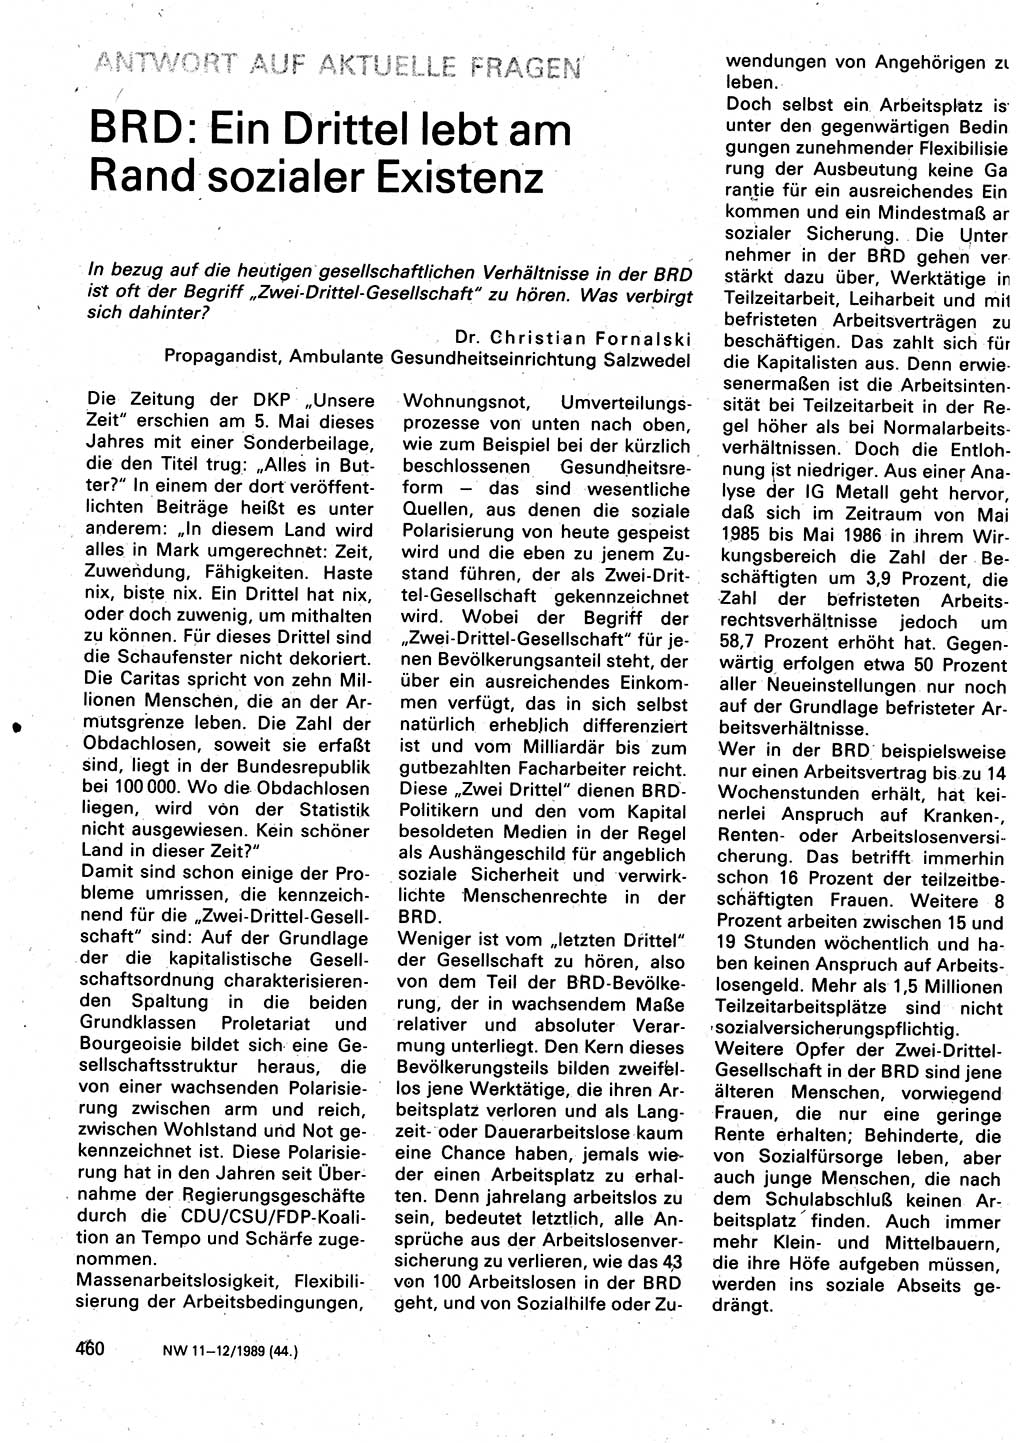 Neuer Weg (NW), Organ des Zentralkomitees (ZK) der SED (Sozialistische Einheitspartei Deutschlands) für Fragen des Parteilebens, 44. Jahrgang [Deutsche Demokratische Republik (DDR)] 1989, Seite 460 (NW ZK SED DDR 1989, S. 460)